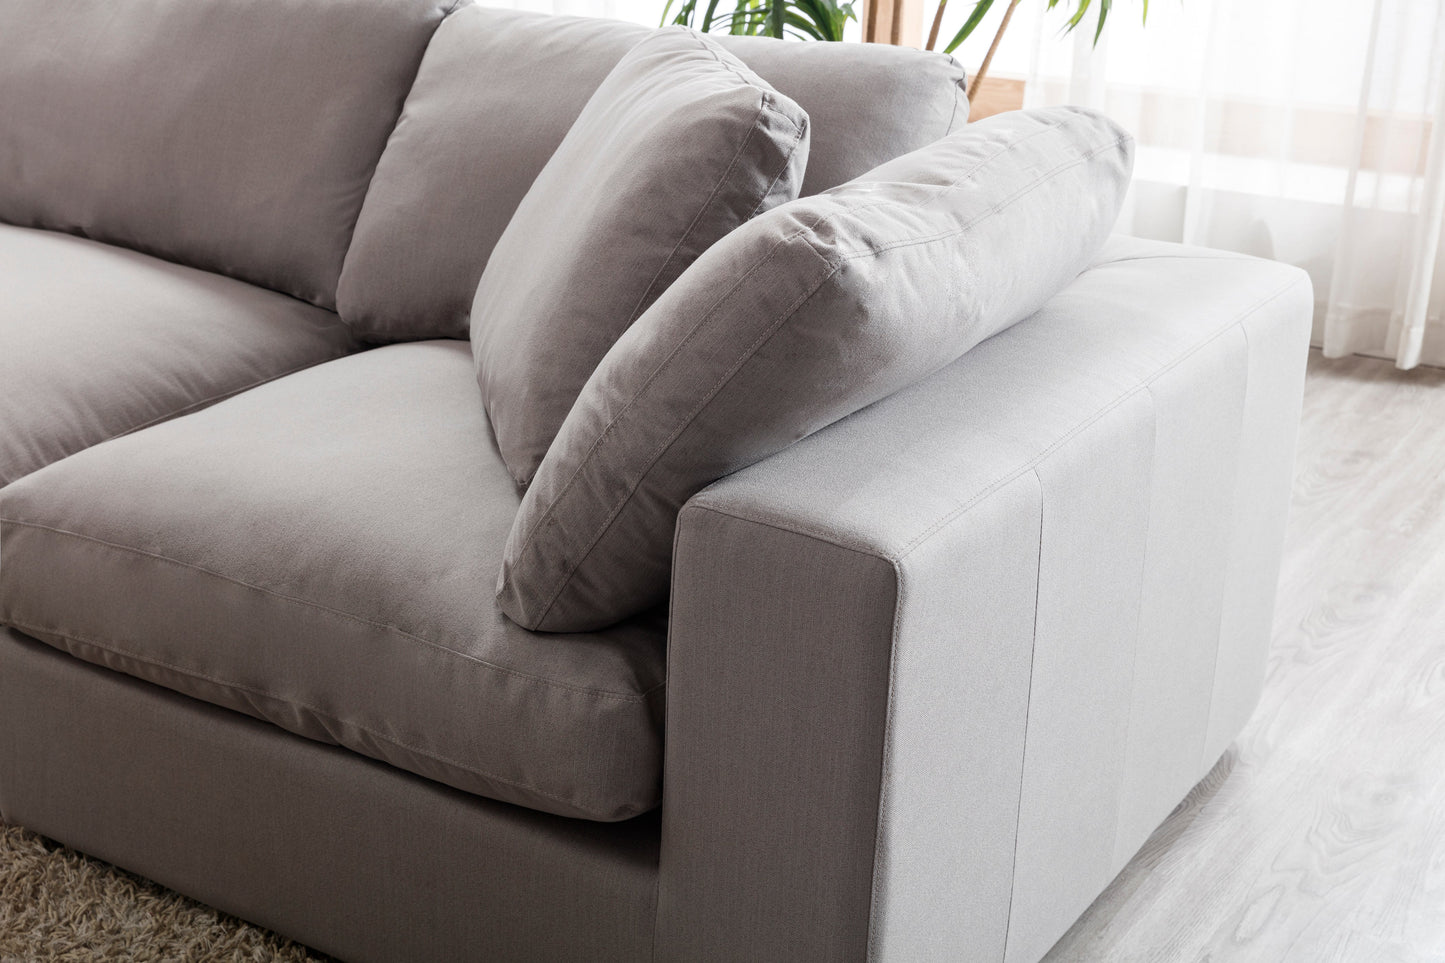 Rivas Contemporary Feather Fill 5-Piece Modular Sectional Sofa, Graphite